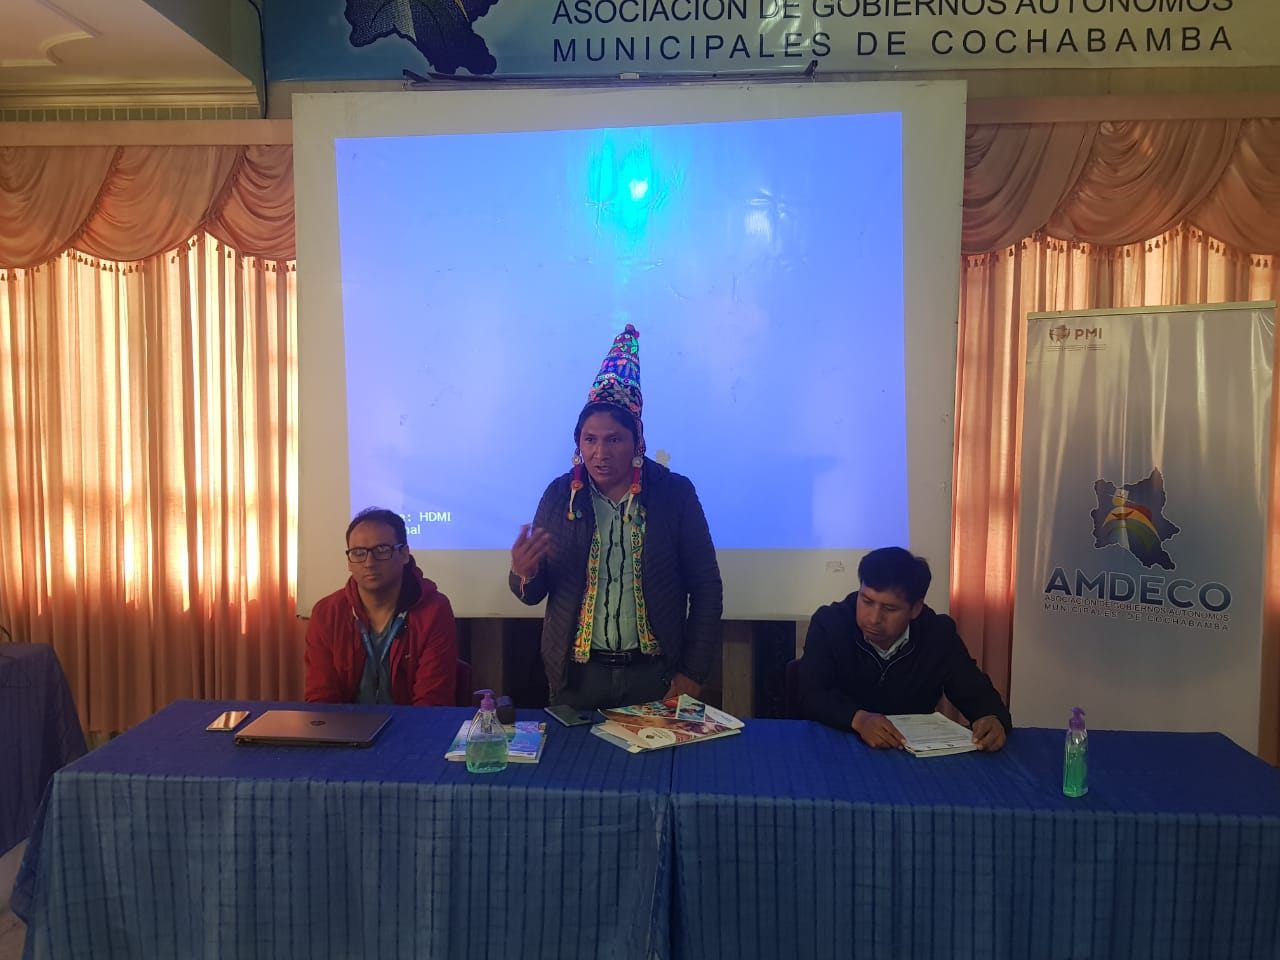 El Ministerio de Culturas y la Asociación de Municipios de Cochabamba “AMDECO”, realizaron eventos de fortalecimiento Municipal